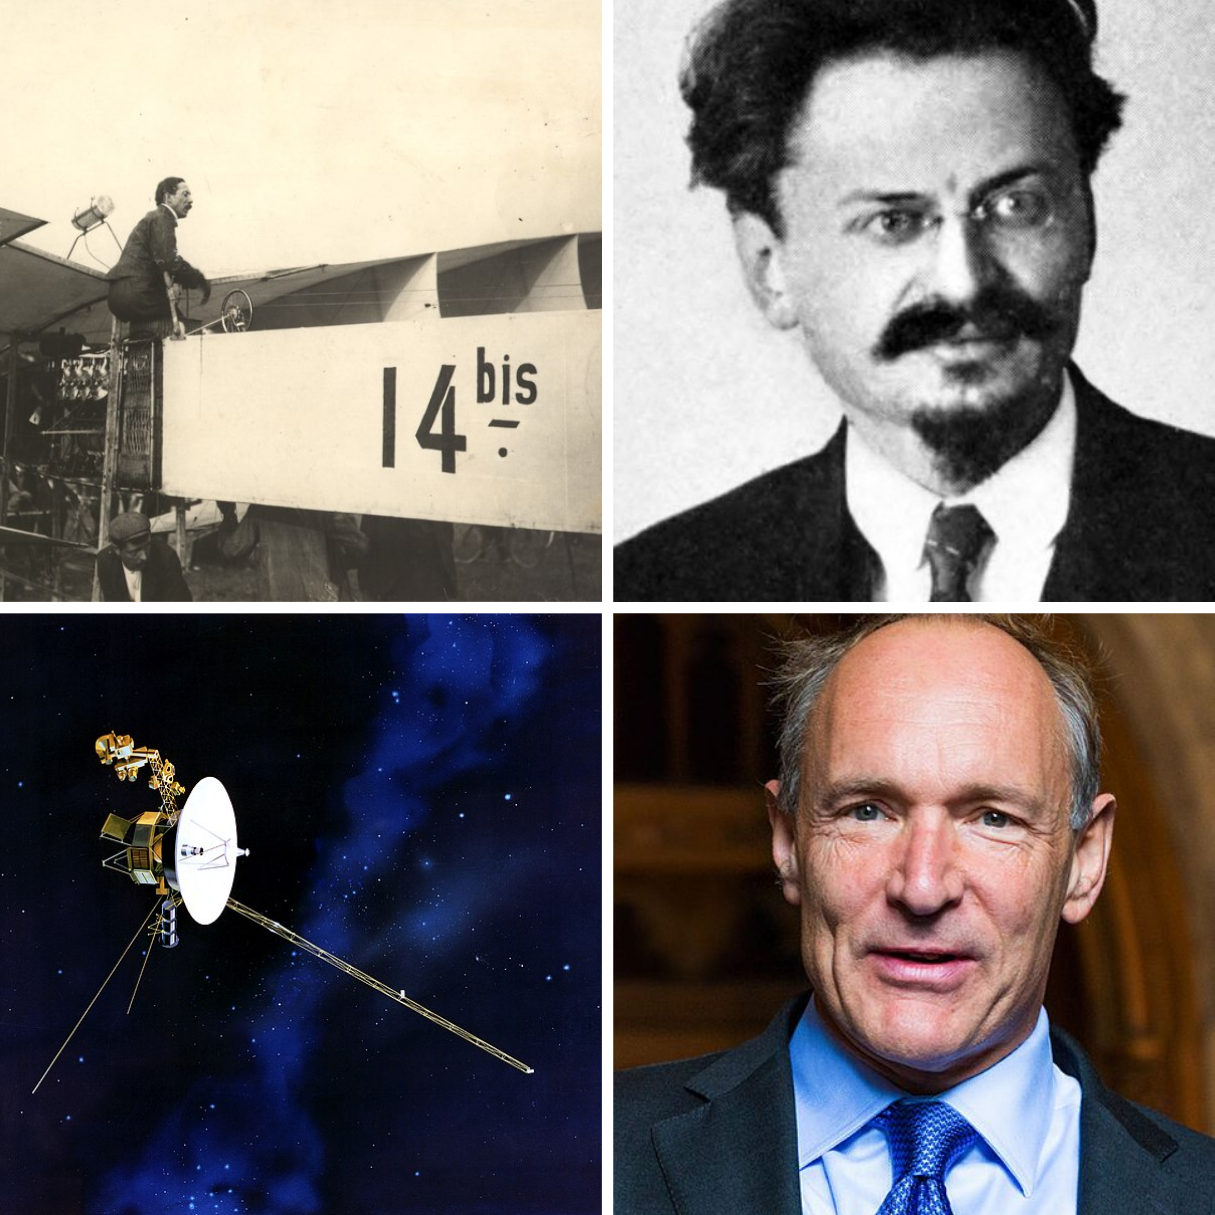 14 Bis, Leon Tróstki,  Voyager I e Tim Berners-Lee.